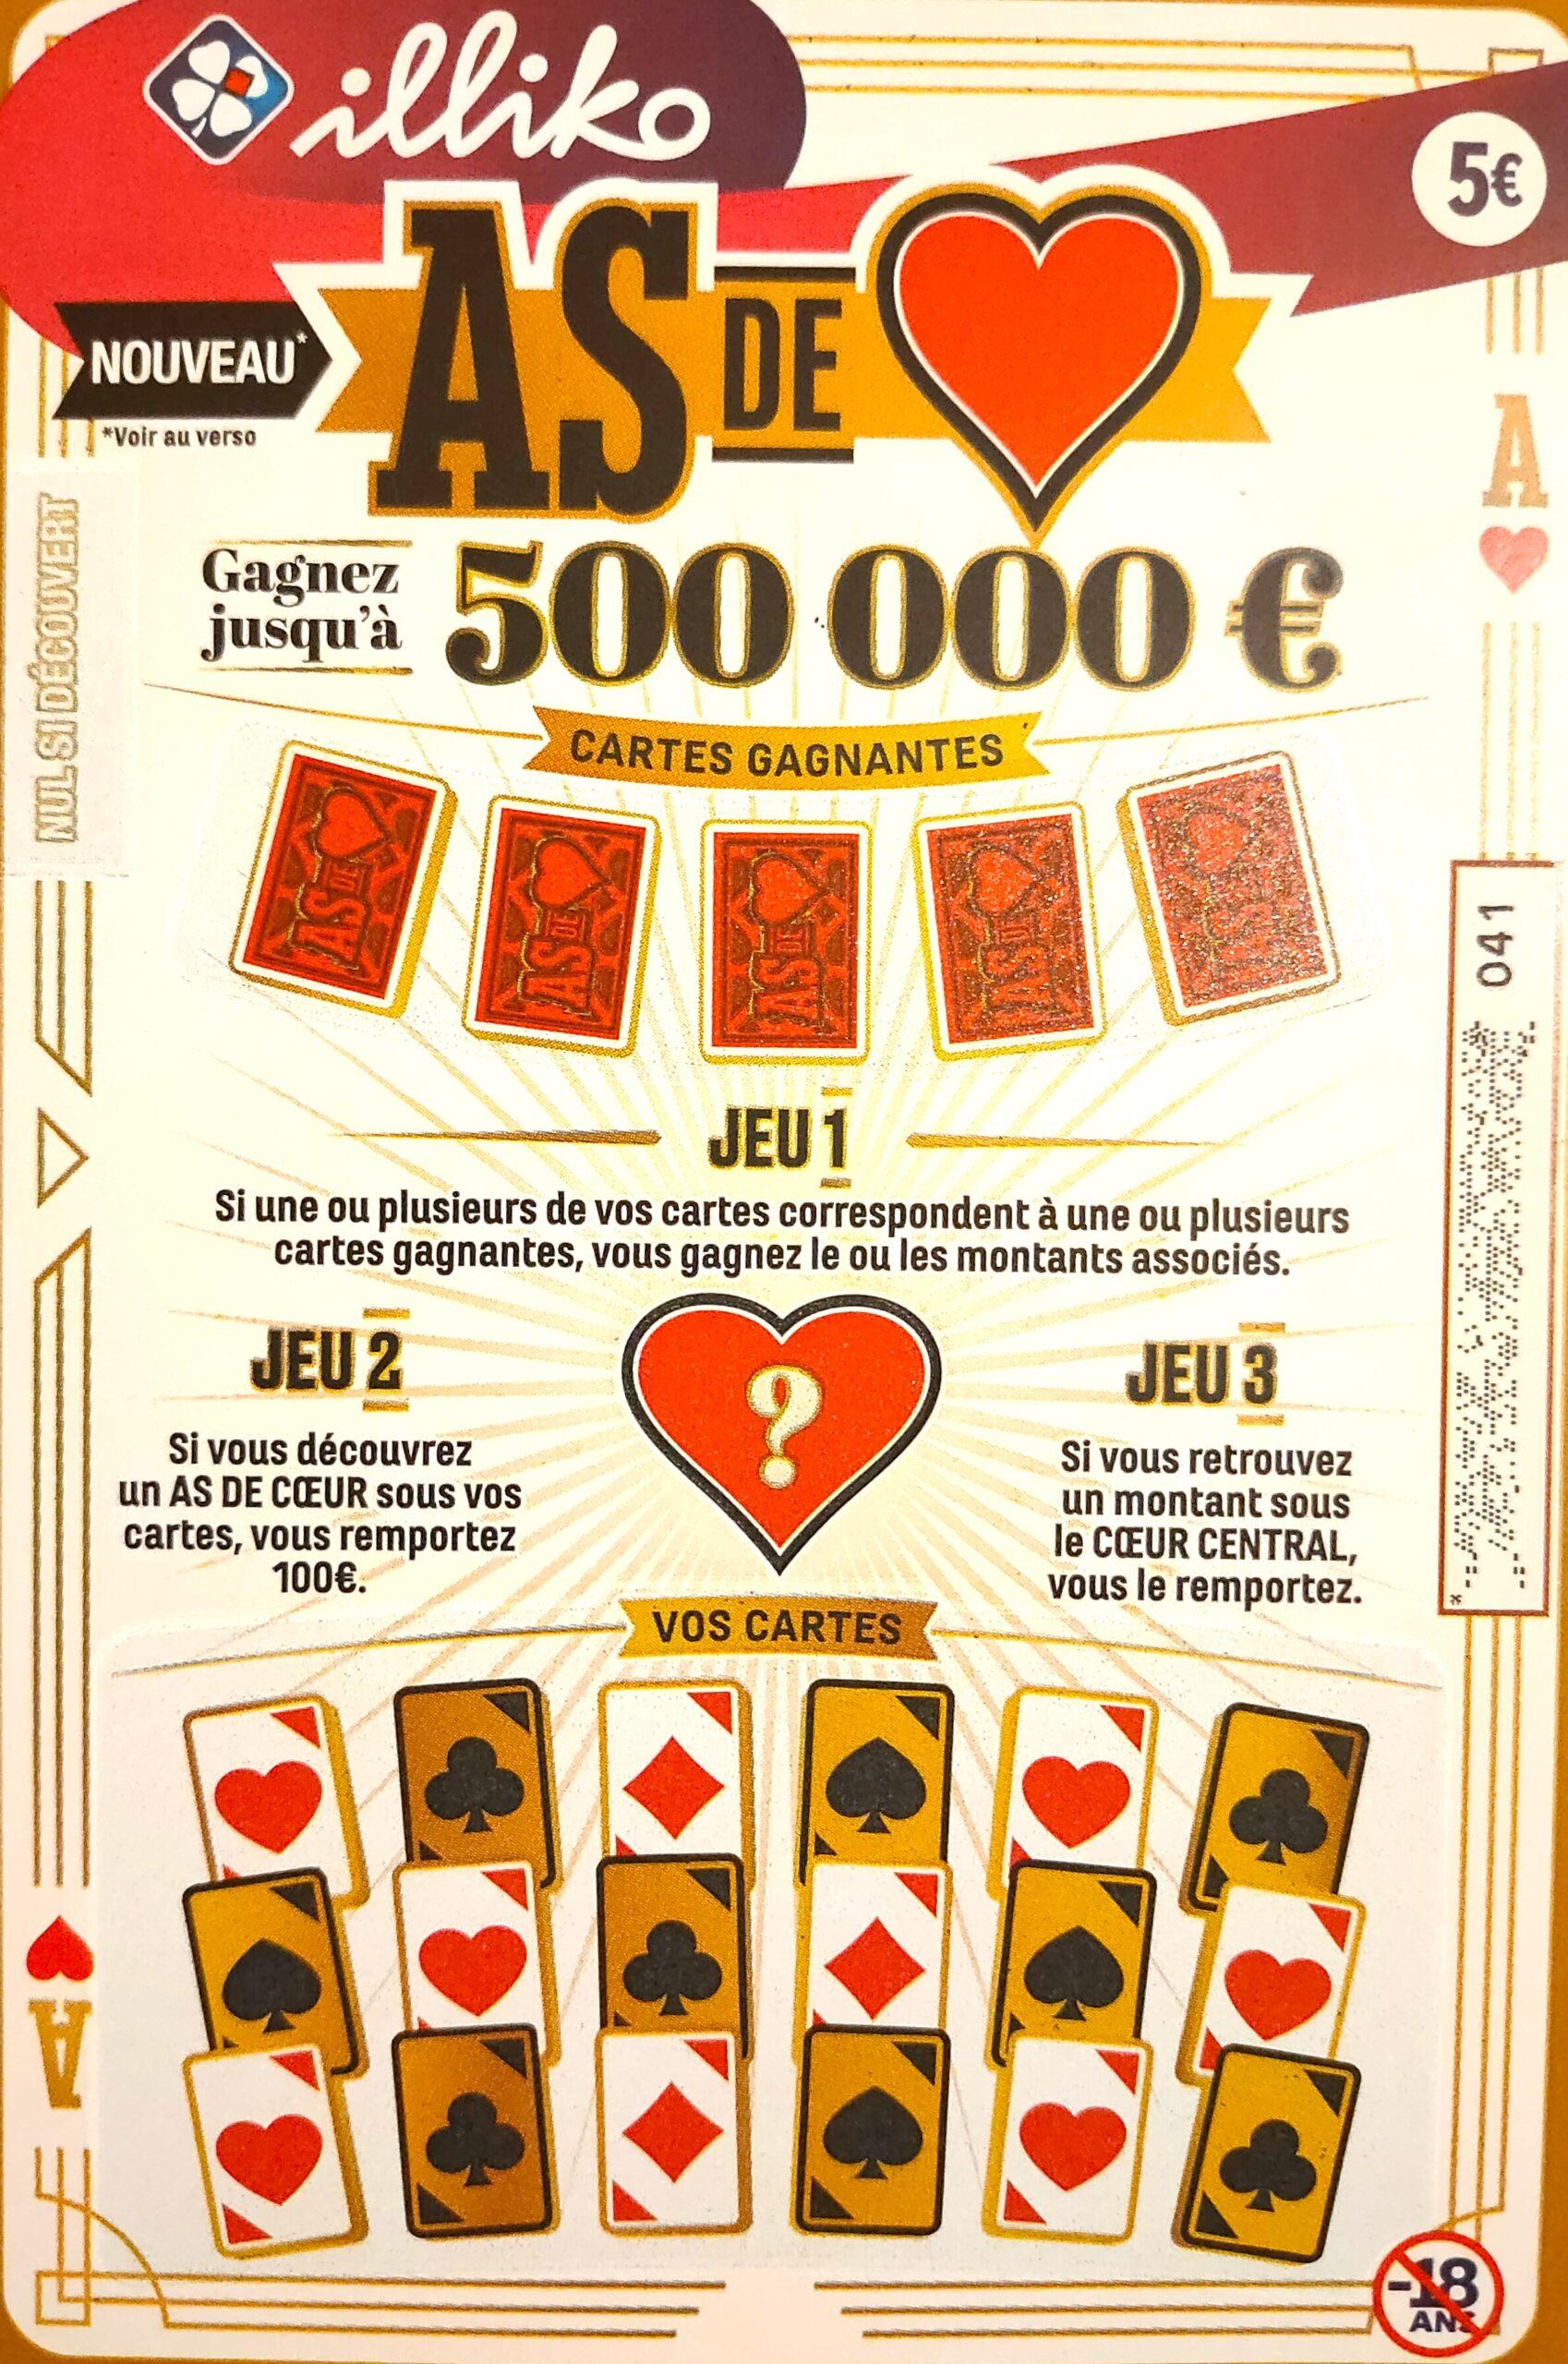 FDJ Grattage : Carré Or, le nouveau jeu pour gagner jusqu'à 500'000€